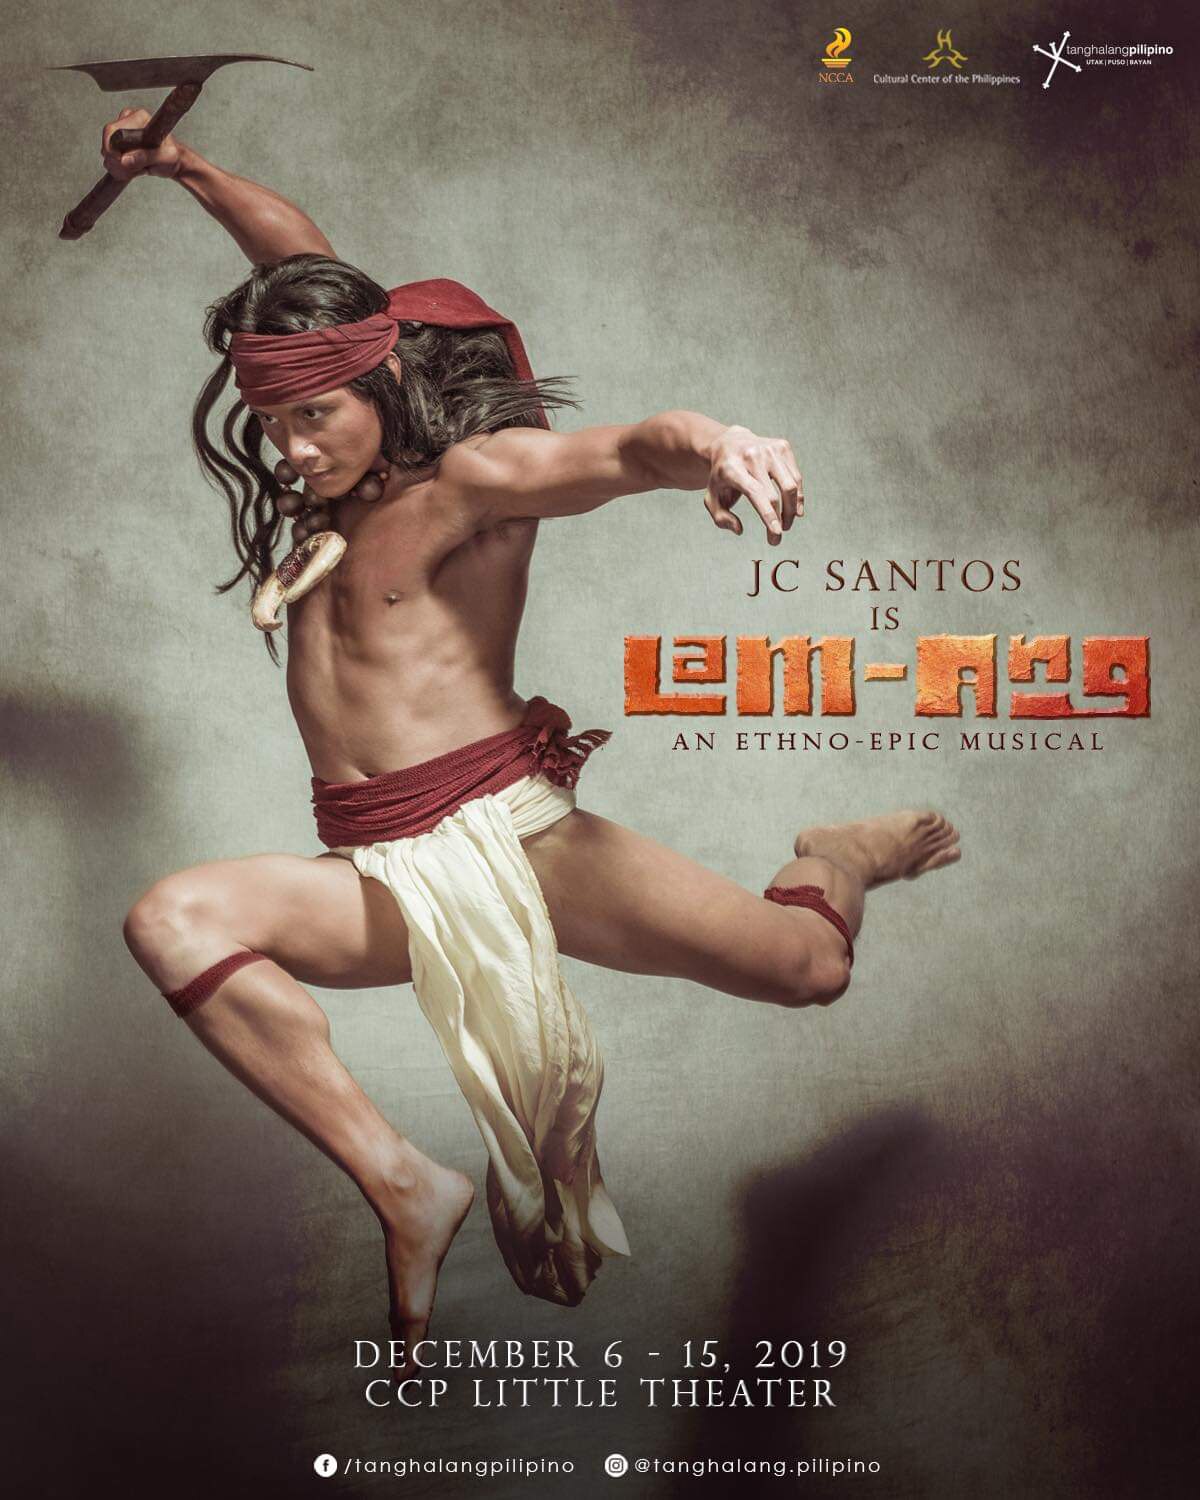 LOOK: JC Santos is hero Lam-ang in new musical 1